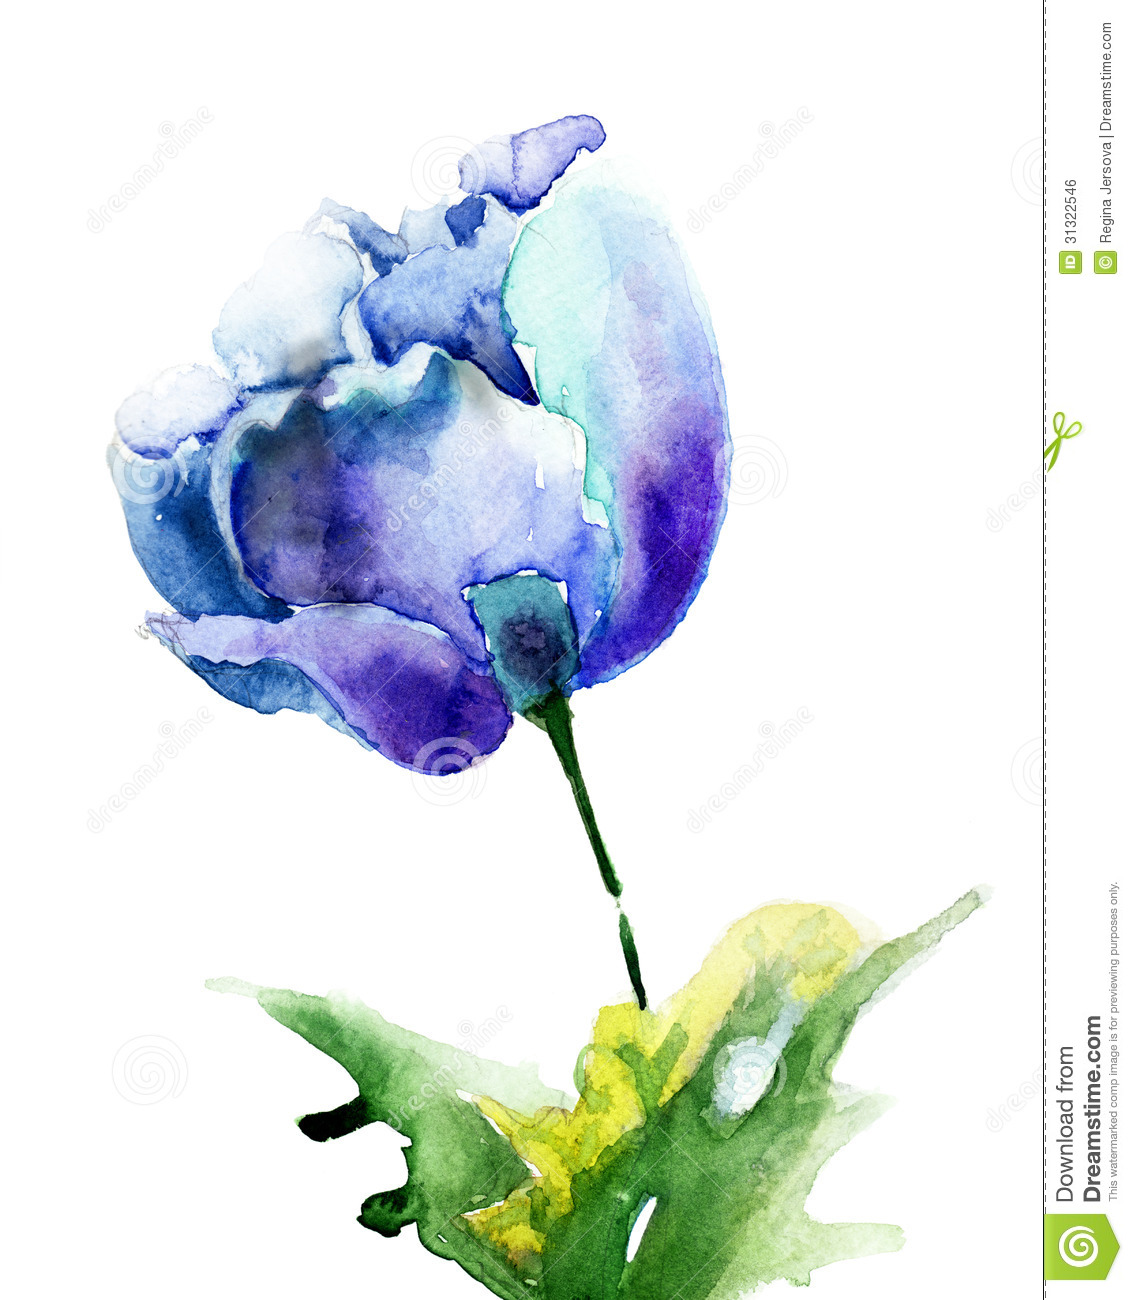 Stylized Blue Tulip Flowers Royalty Free Stock Image   Image  31322546